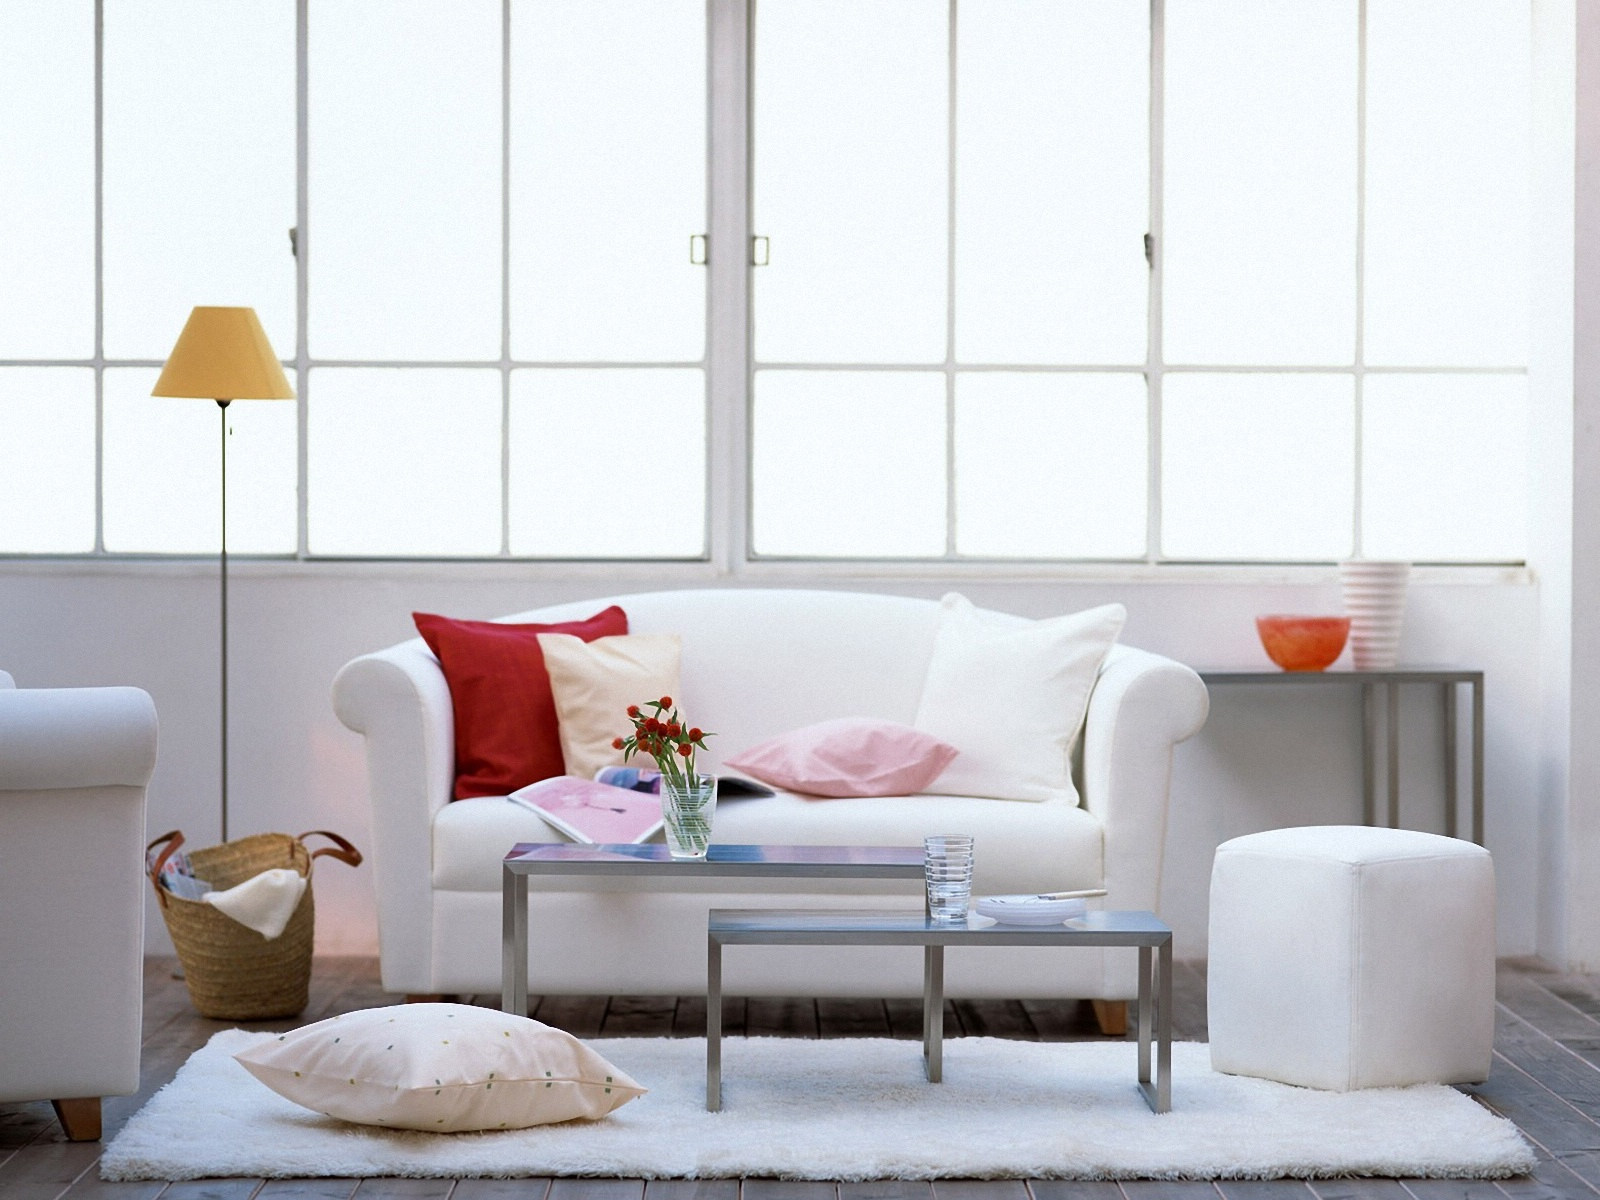 wallpaper for living room modern,furniture,white,room,interior design,living room